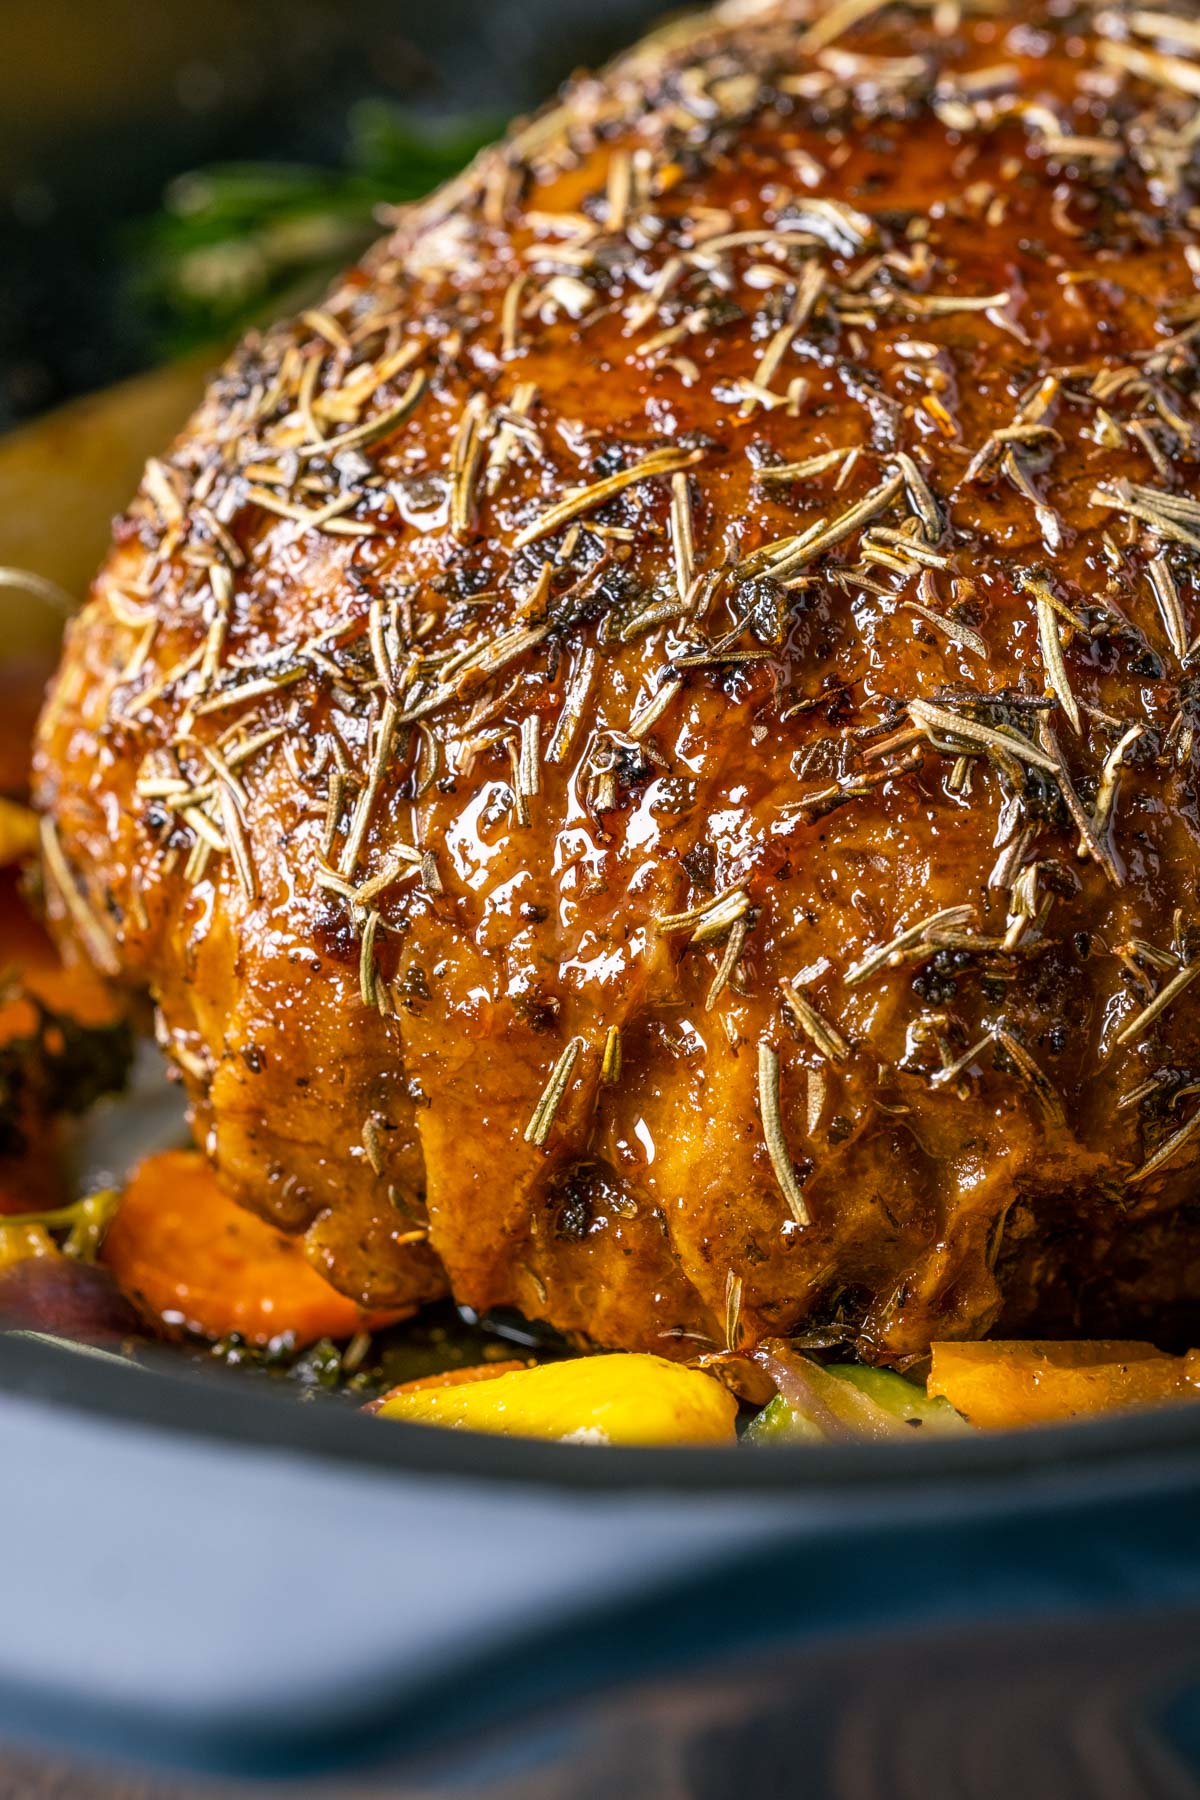 Vegan turkey roast in a roasting pan with vegetables.